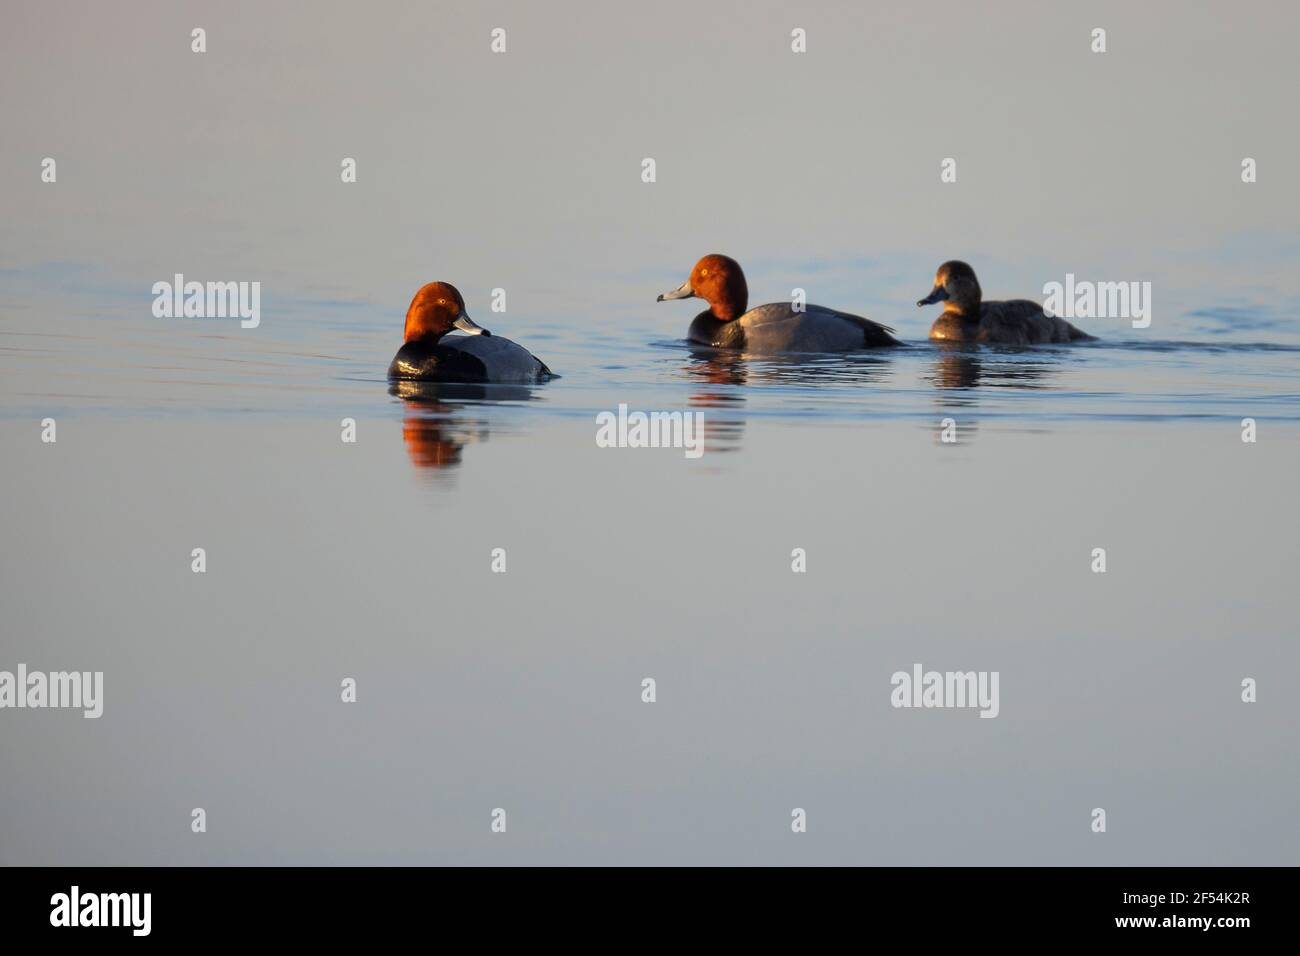 Tres patos de cabeza roja nadando en aguas tranquilas. Foto de stock